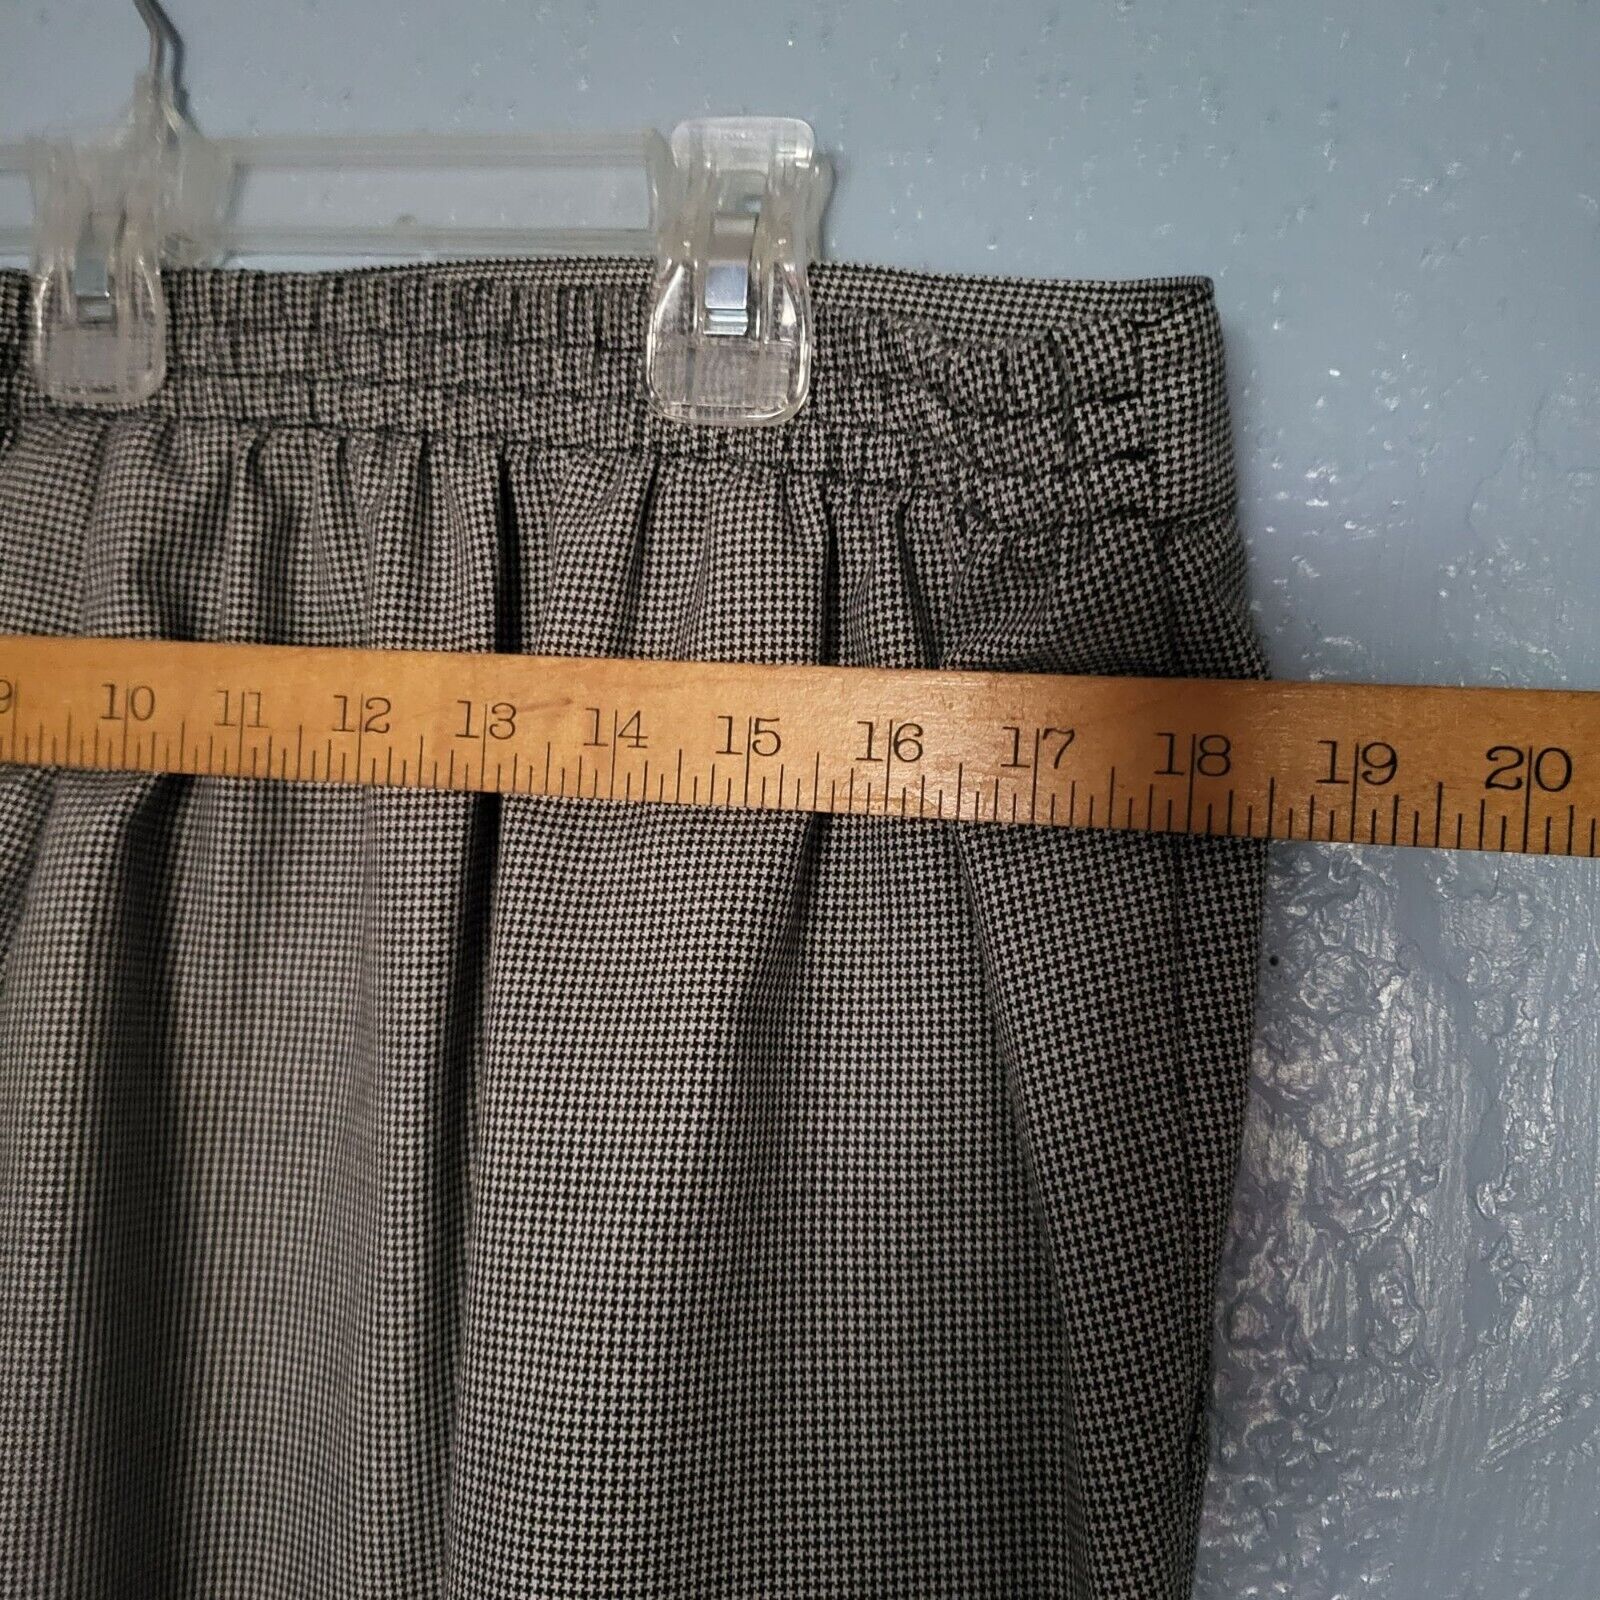 Samantha Grey Blouse and Pants Pair XL - image 9